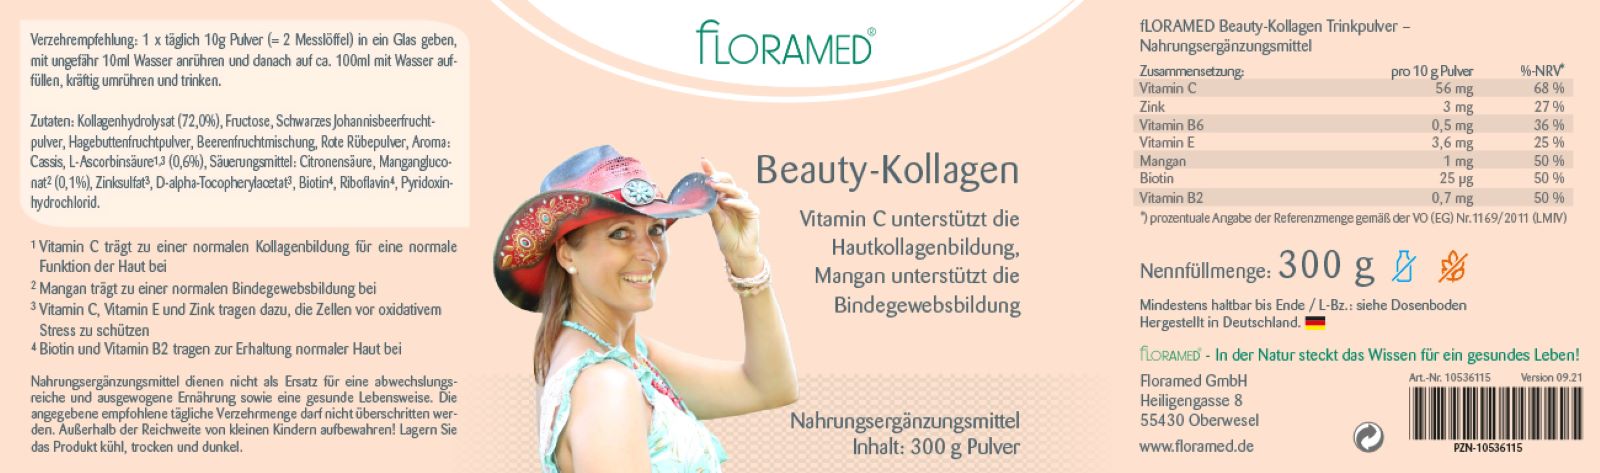 Floramed Beauty-Kollagen